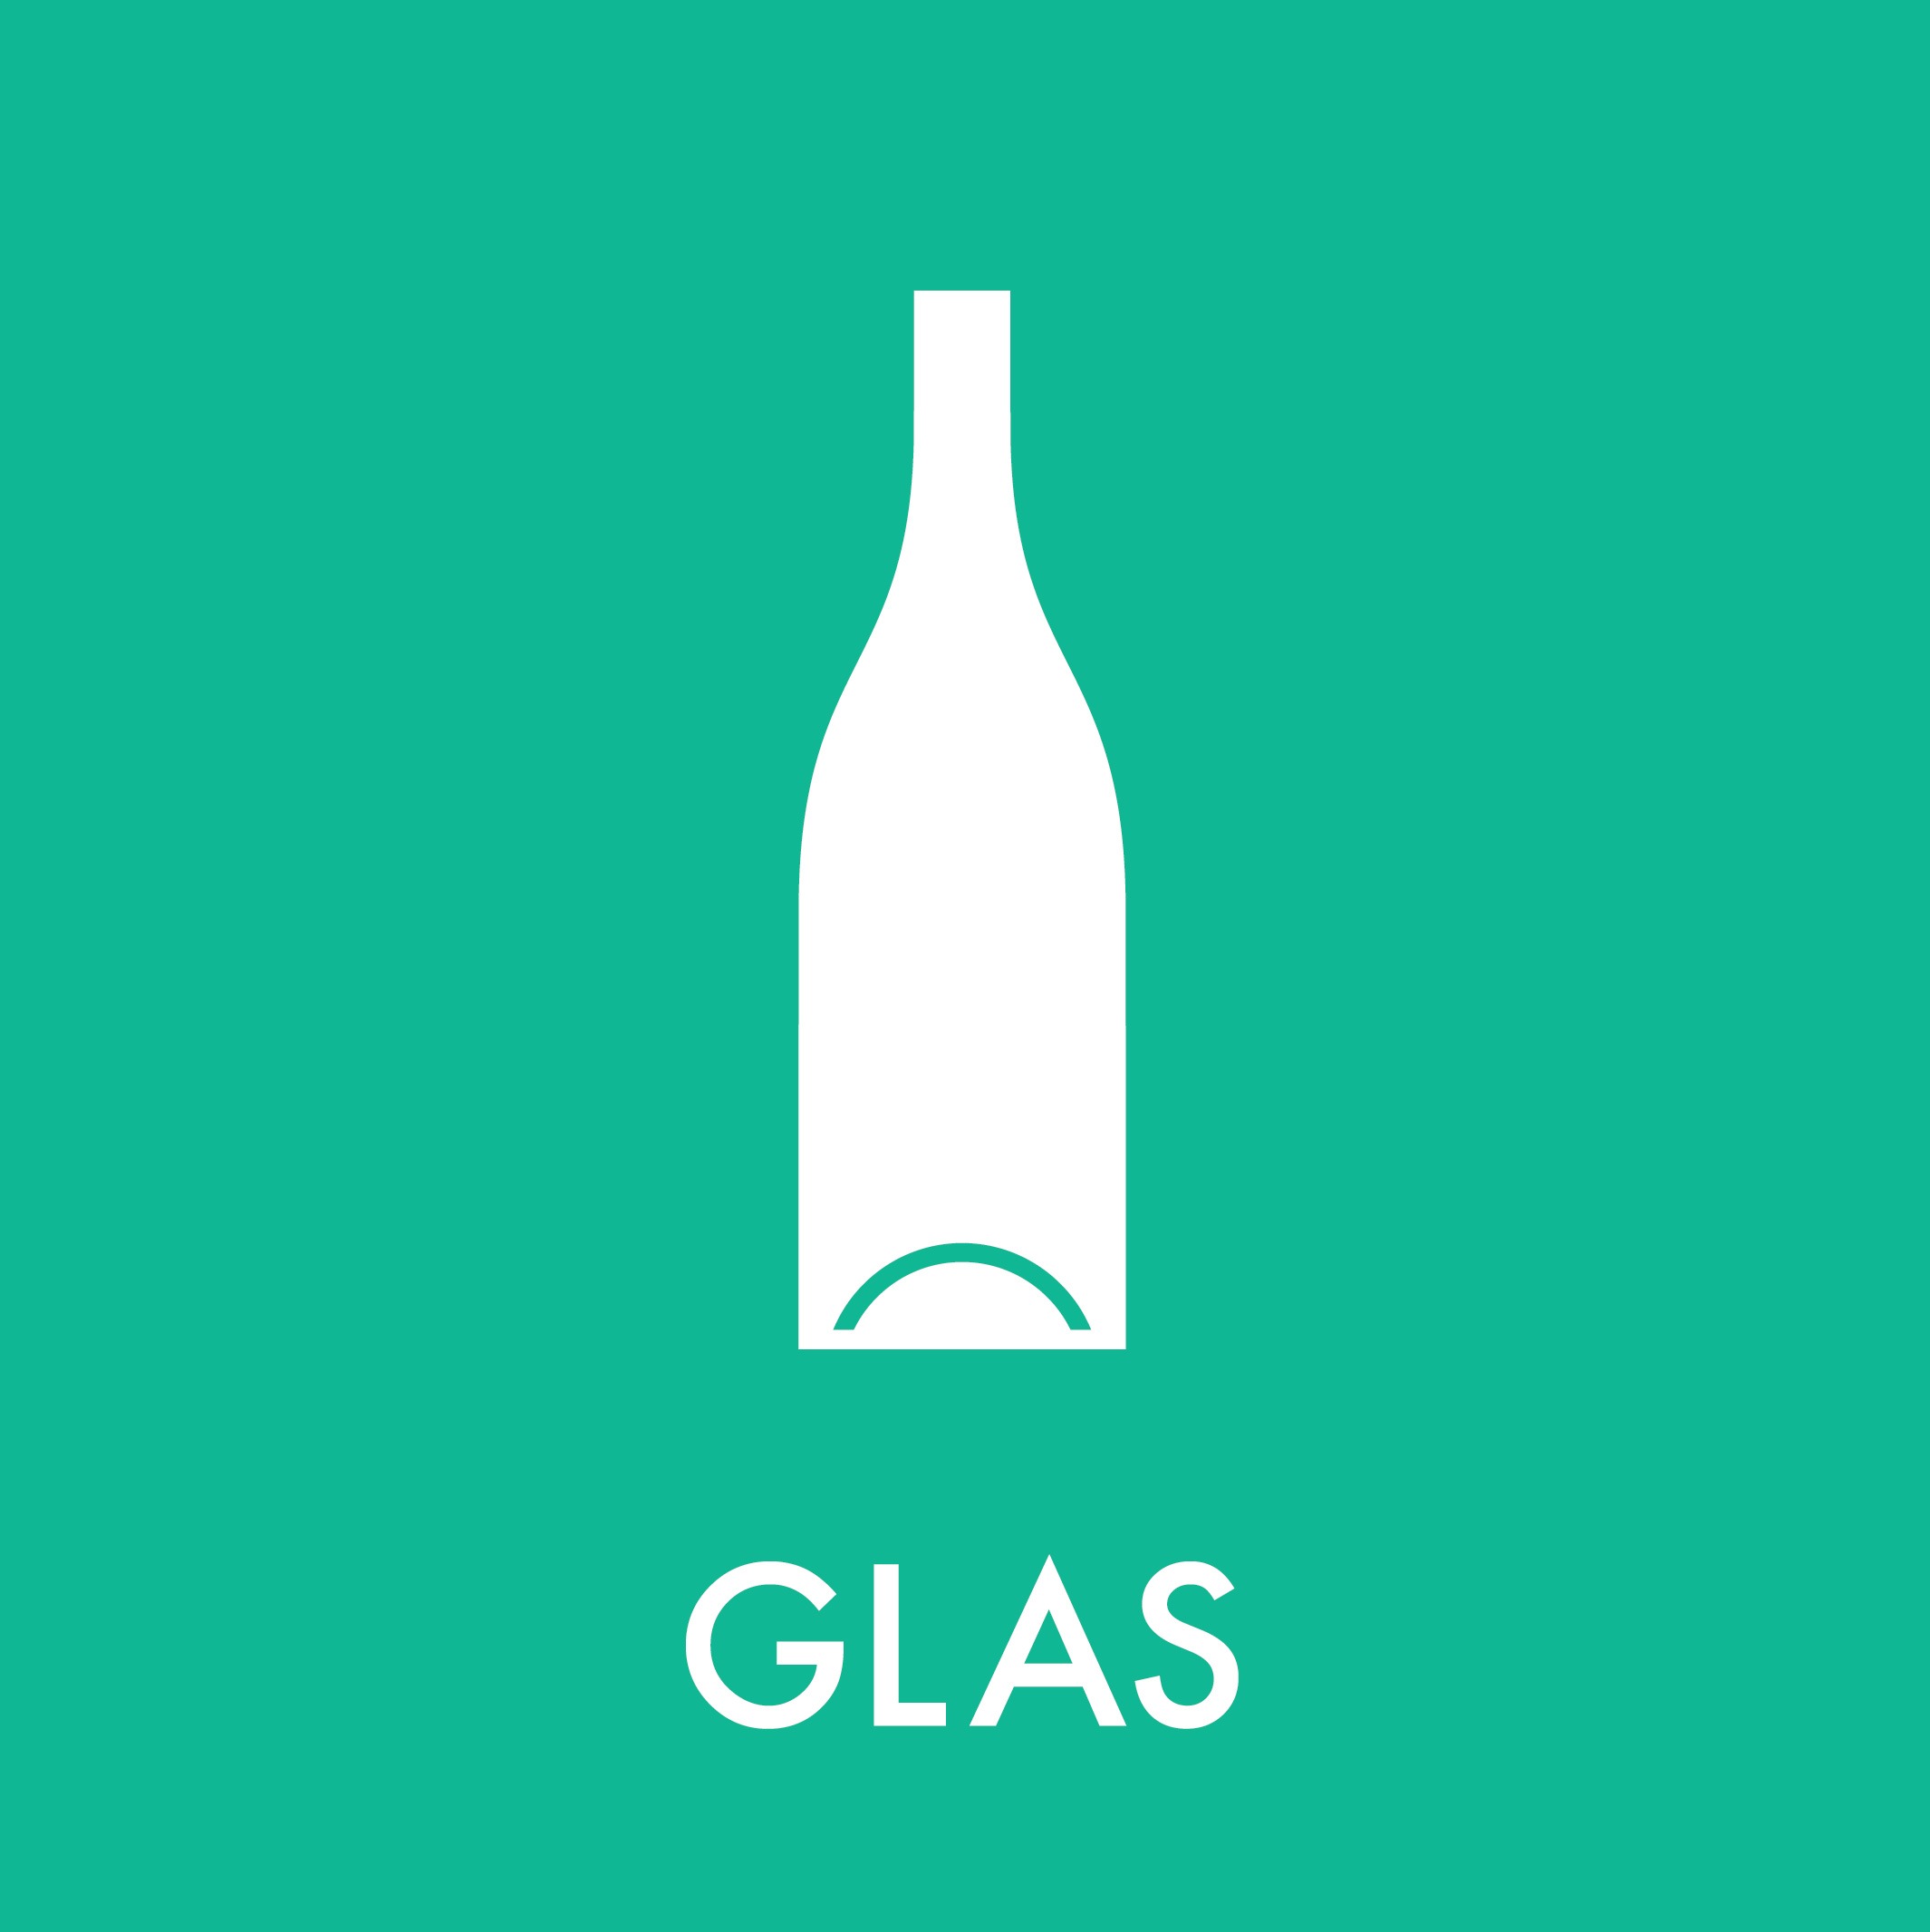 Glass-Bottles